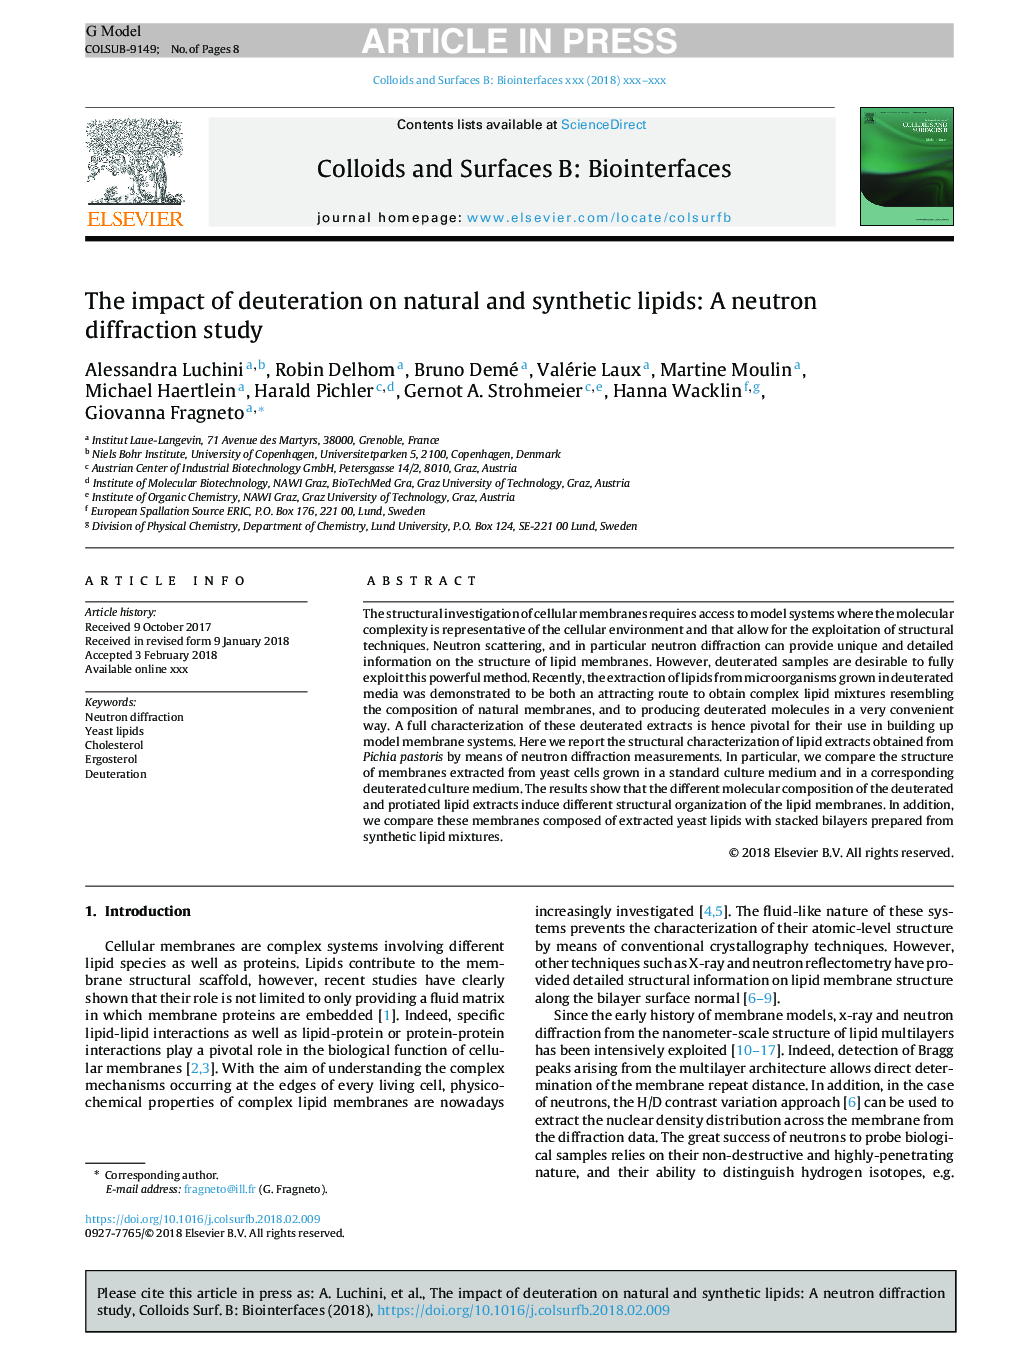 تأثیر آلودگی بر لیپید های طبیعی و مصنوعی: مطالعه پراش نوترونی 